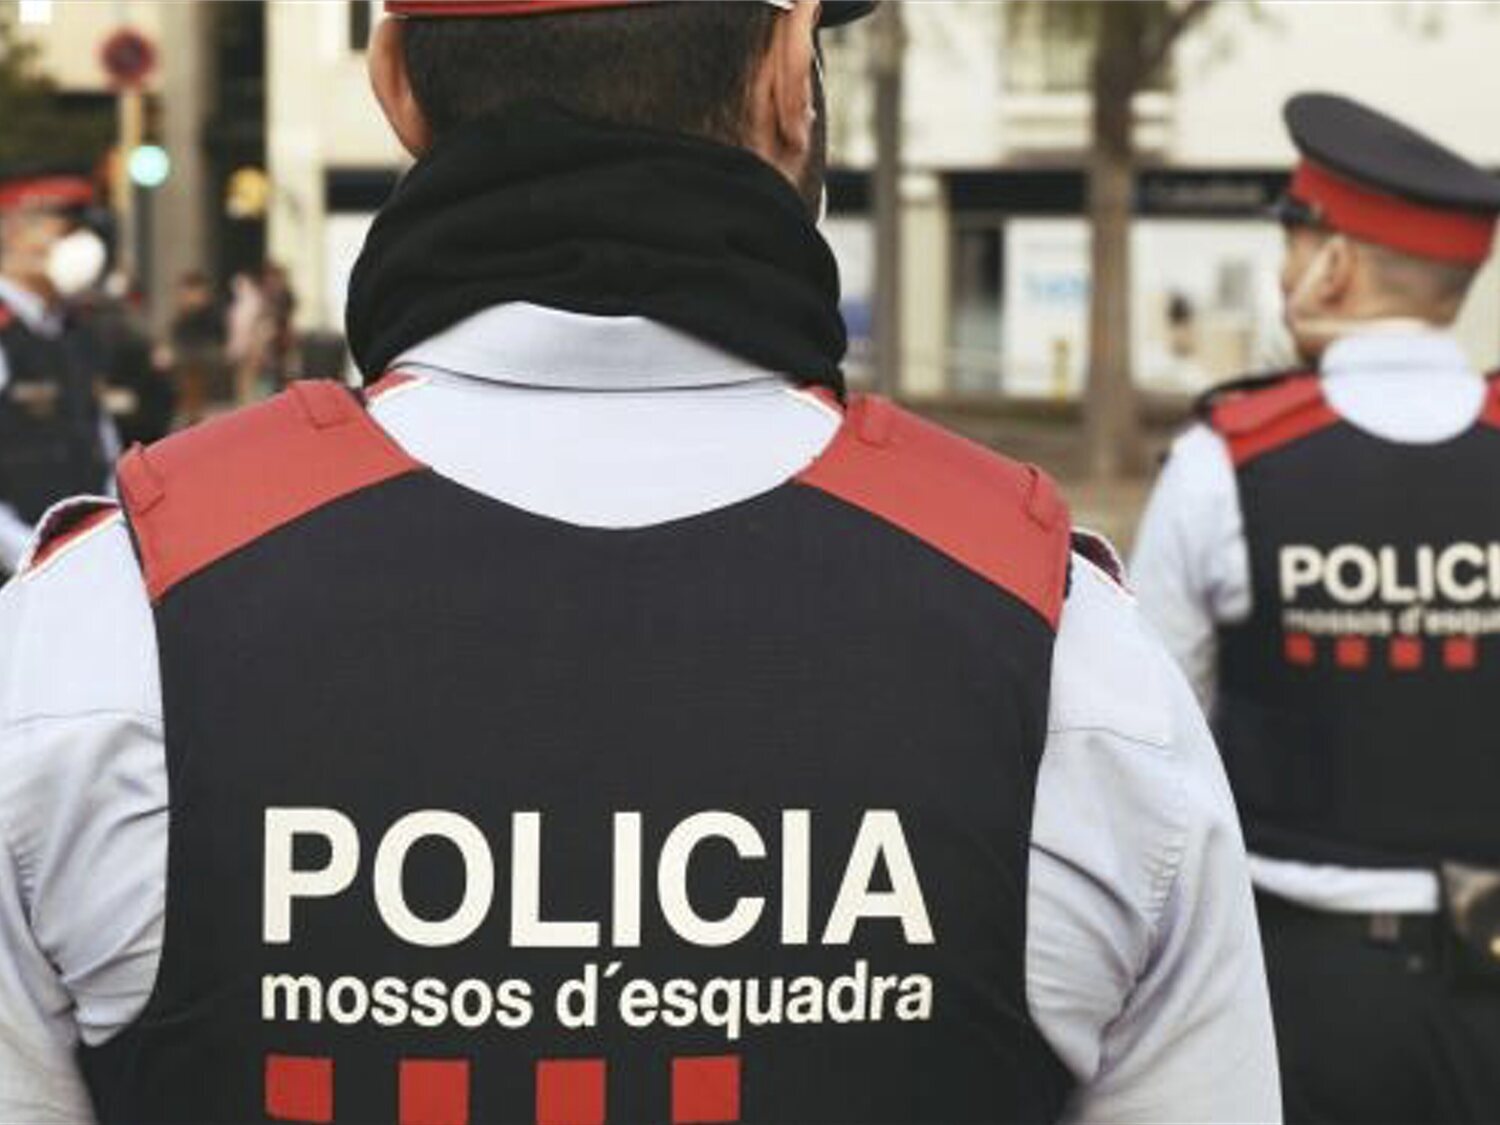 Cuatro individuos agreden sexualmente a una mujer en Mataró mientras paseaba su perro